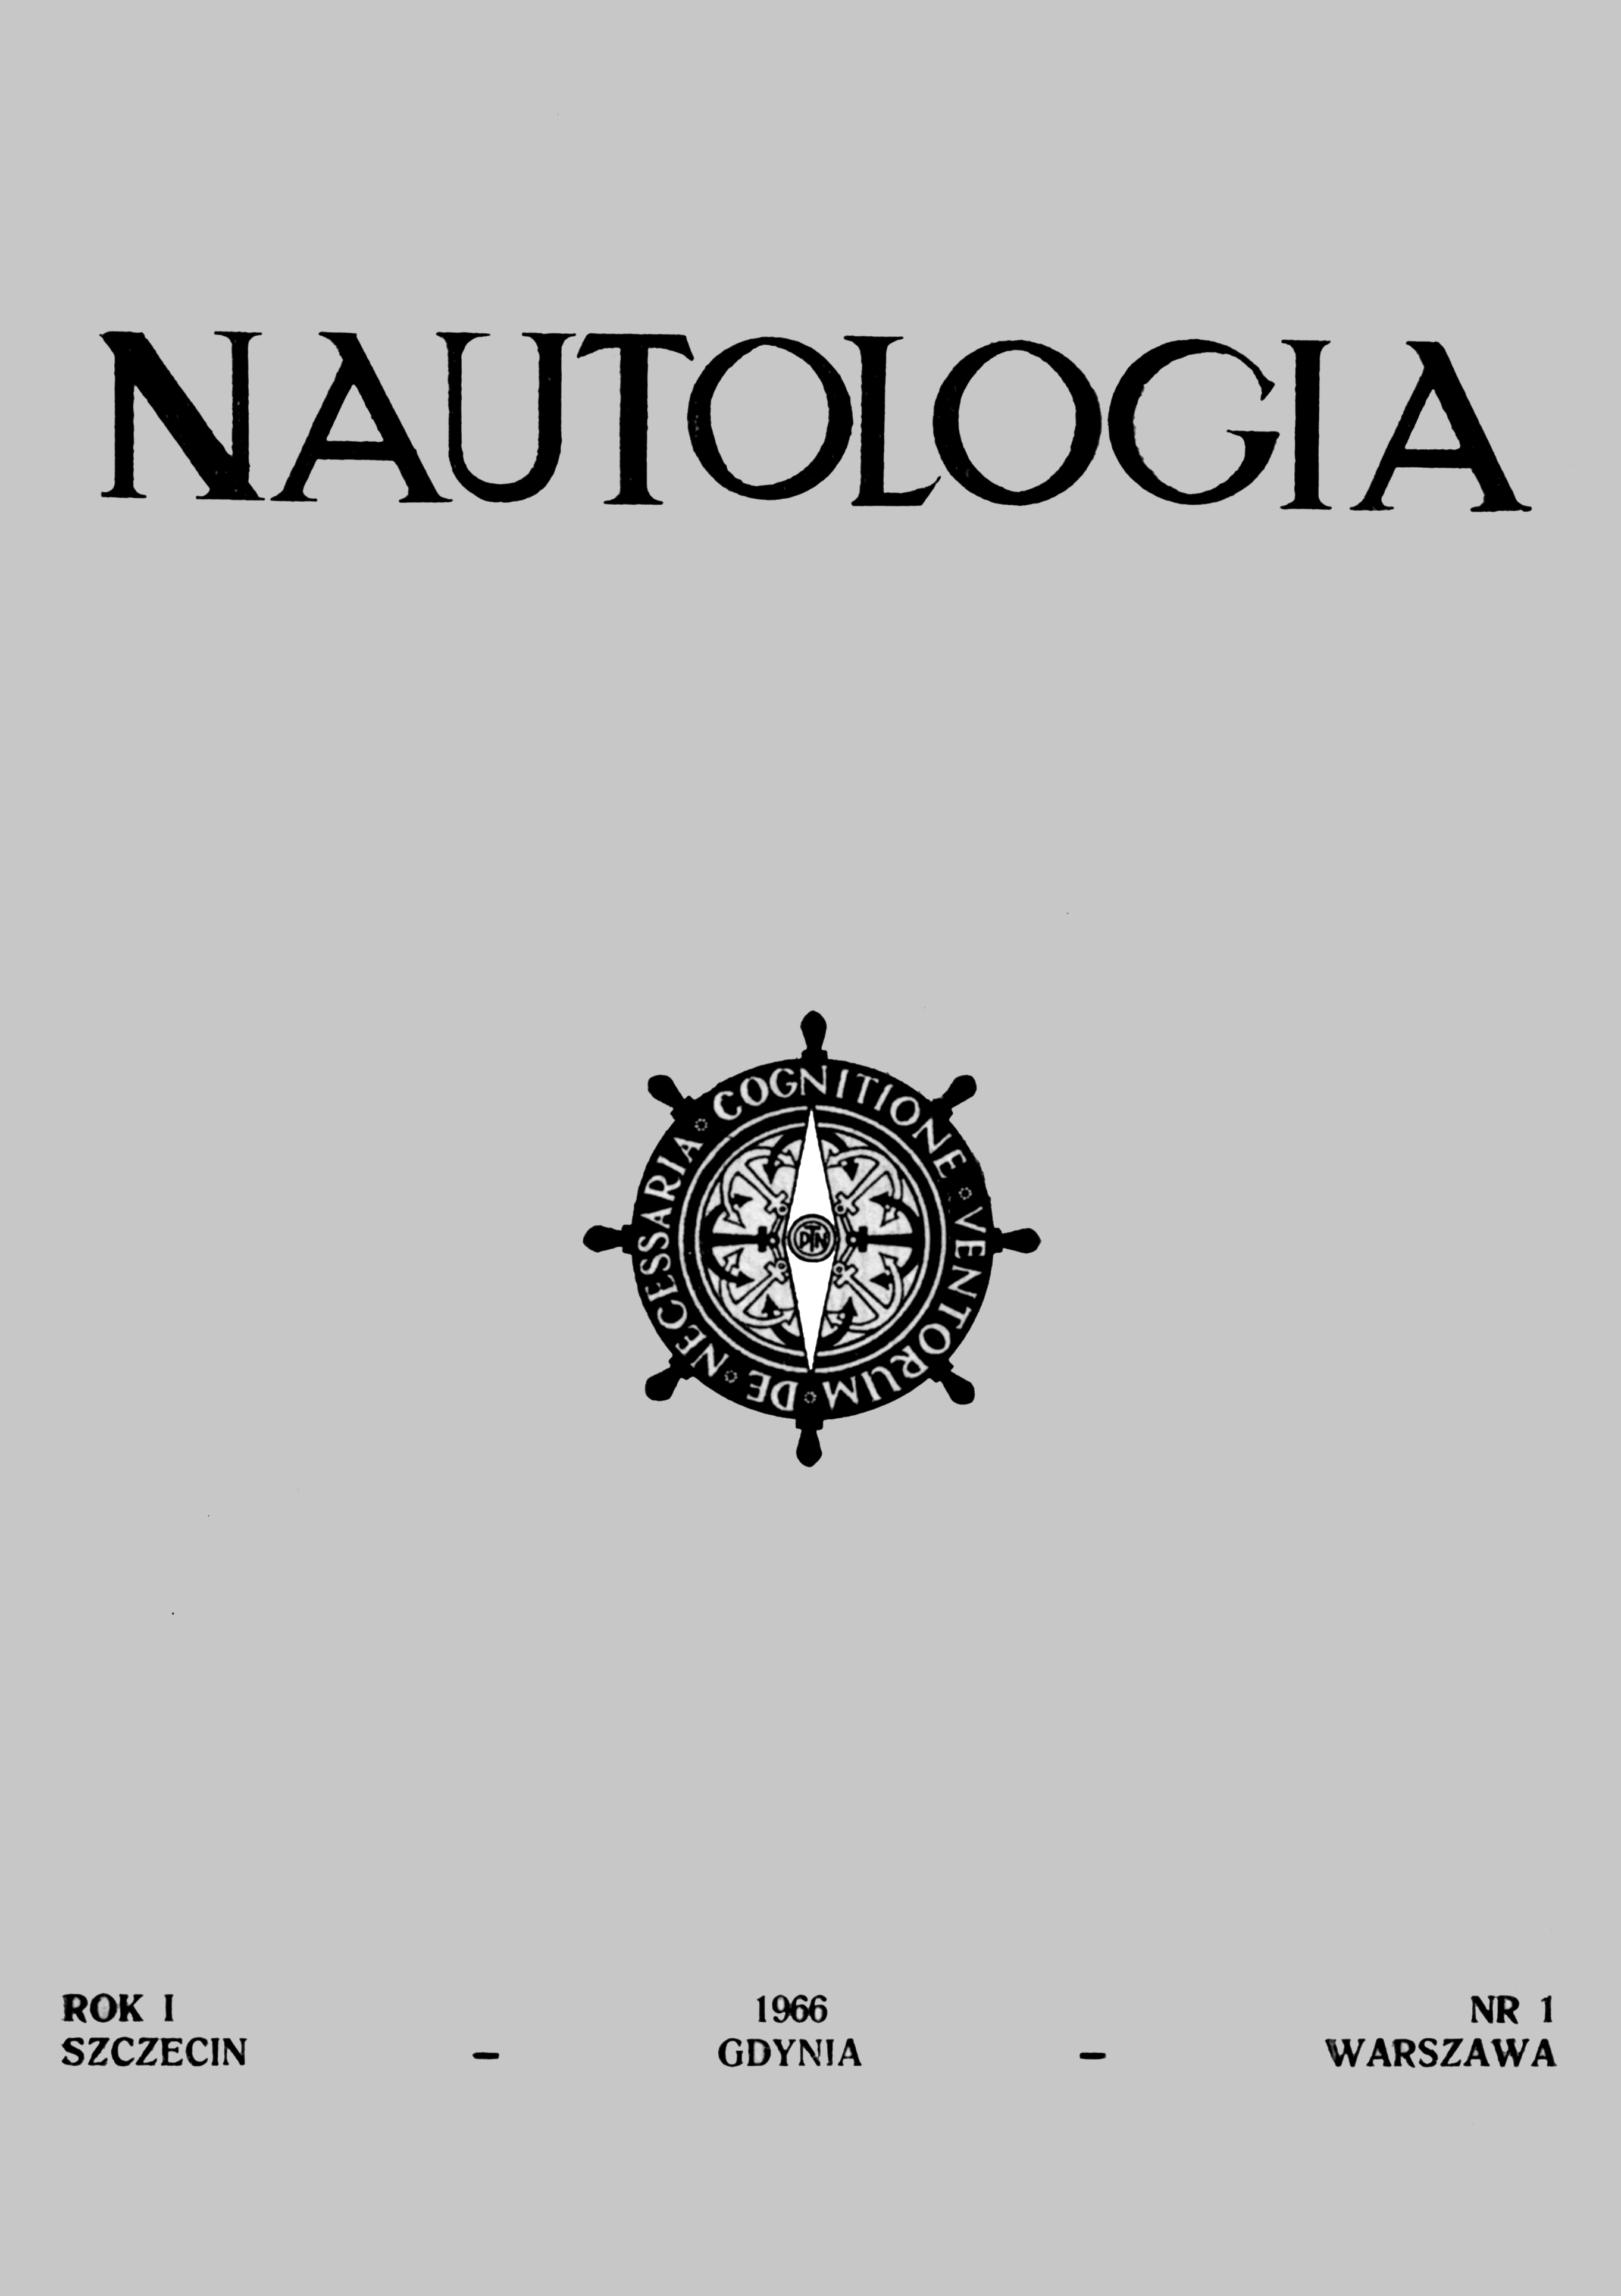 Nautologia